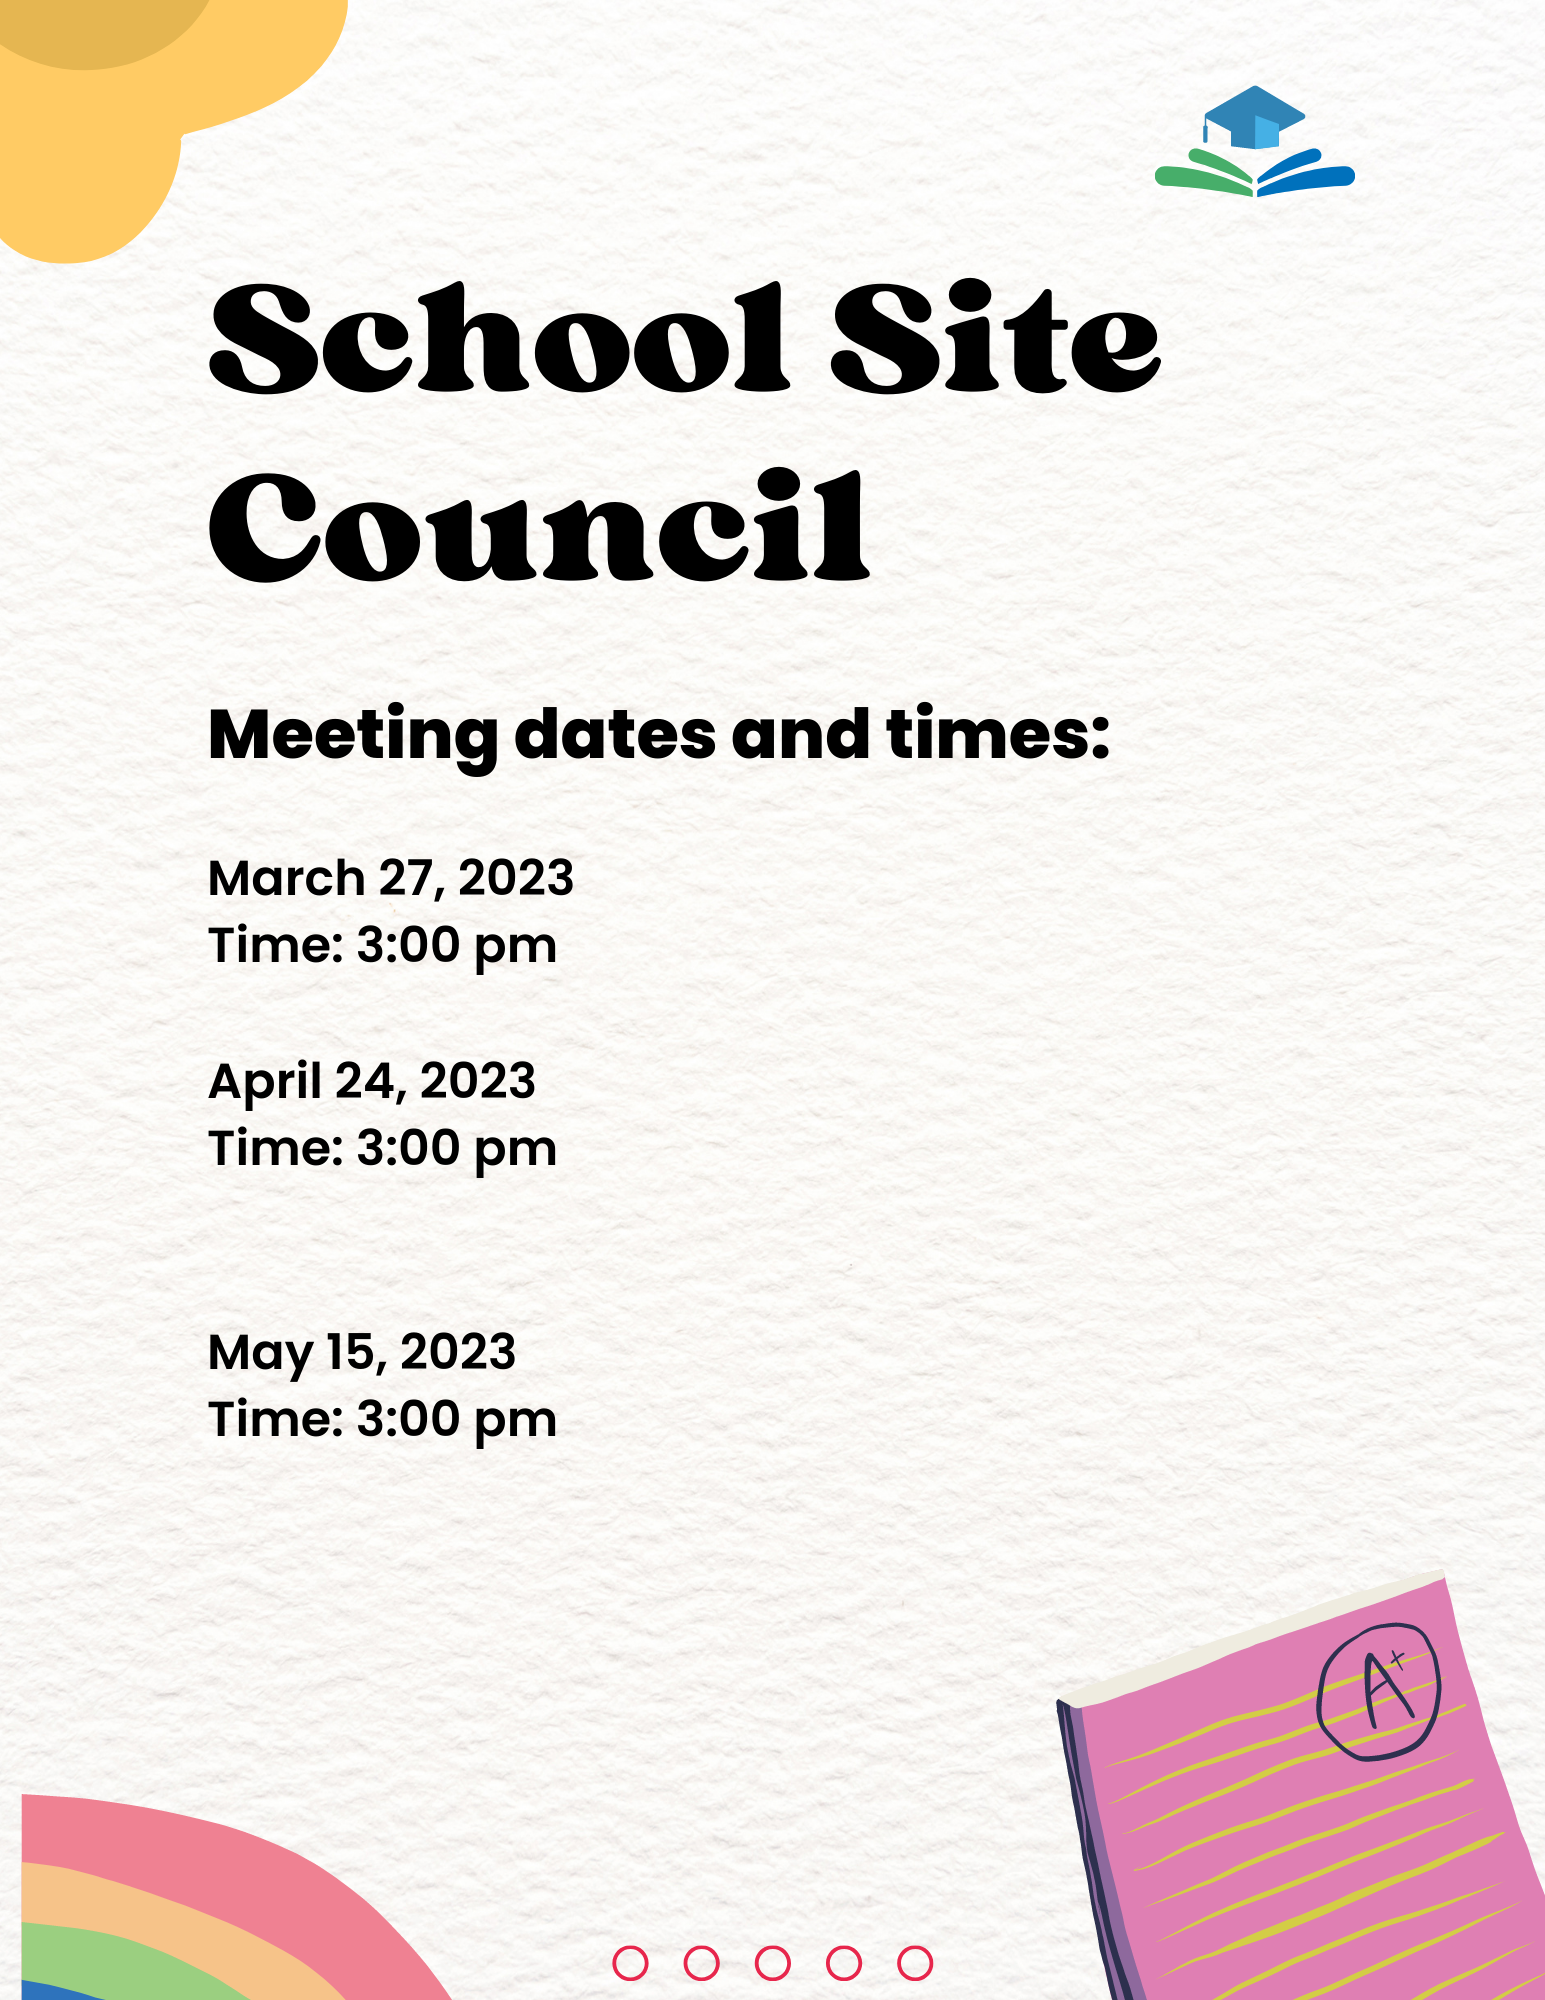 School site council